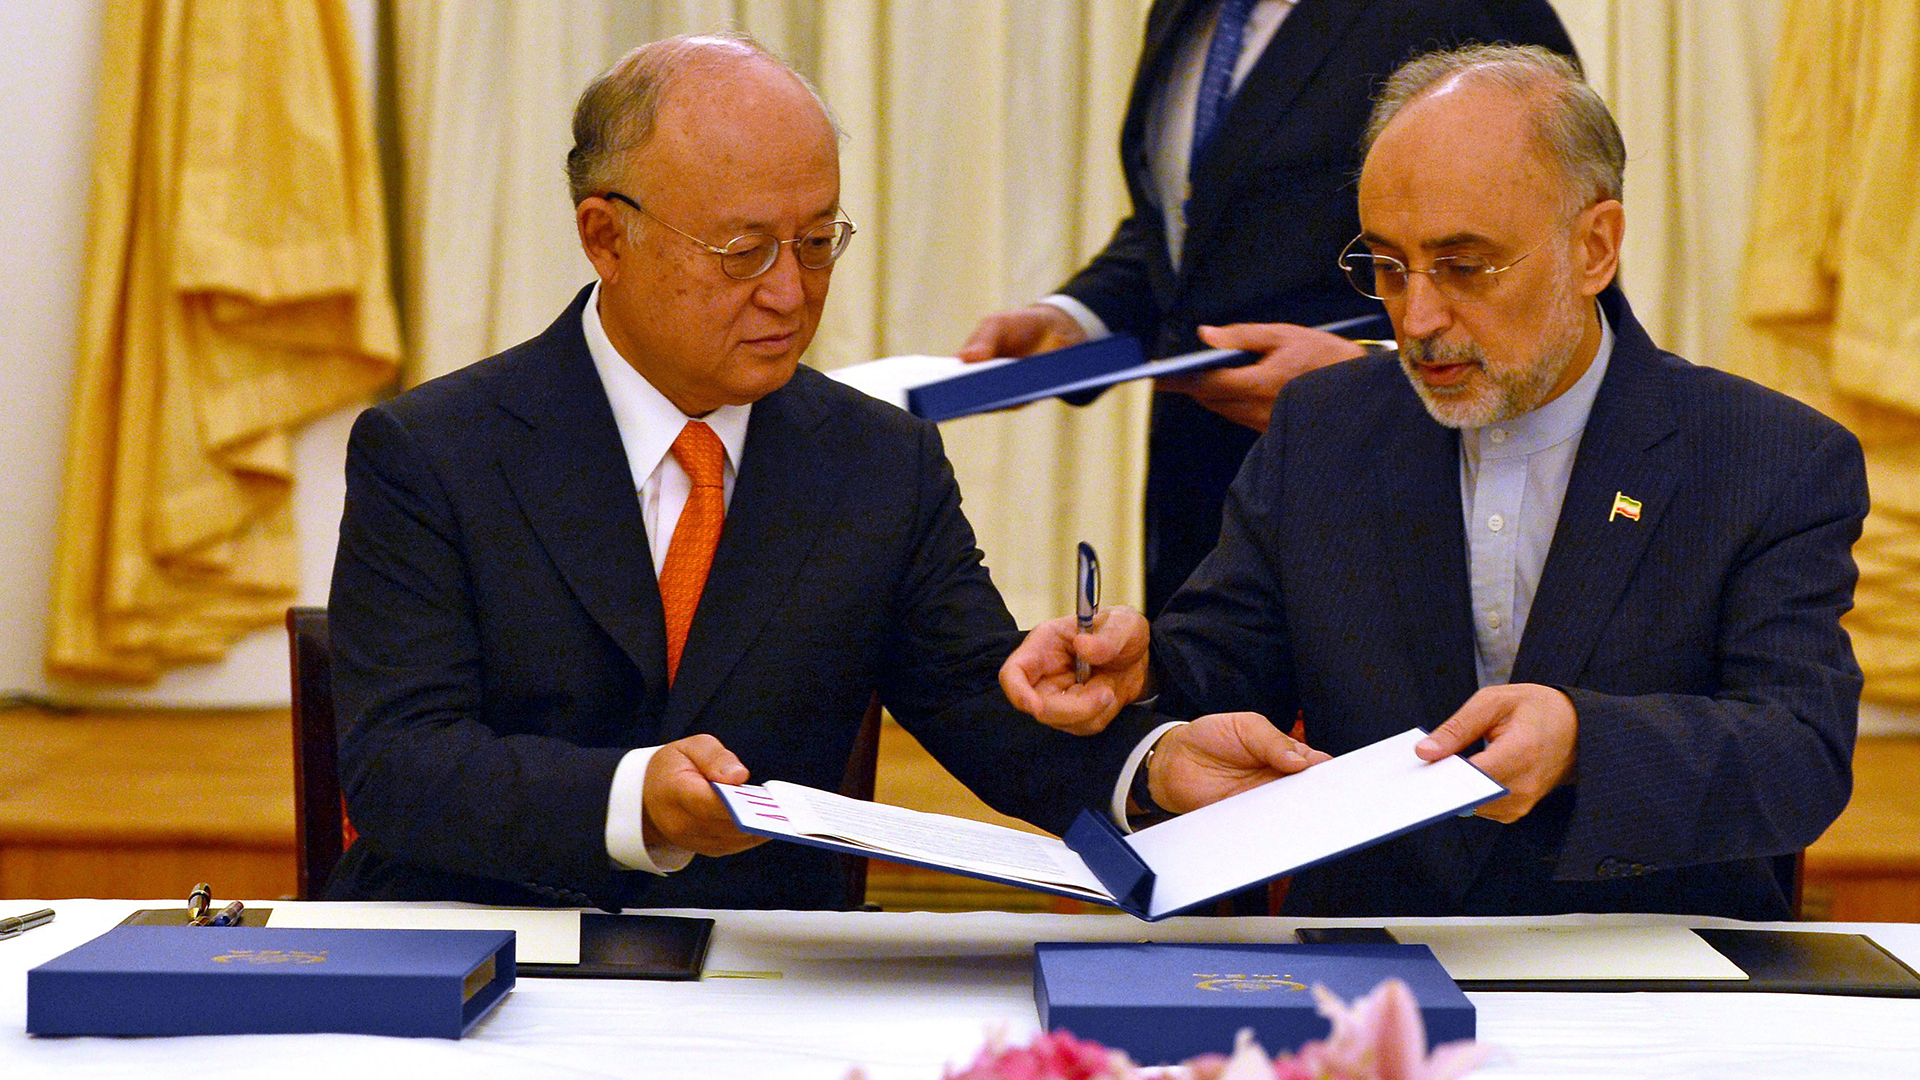 Unterzeichnung des Atomabkommens mit dem Iran am 14. Juli 2015 in Wien | picture alliance / dpa